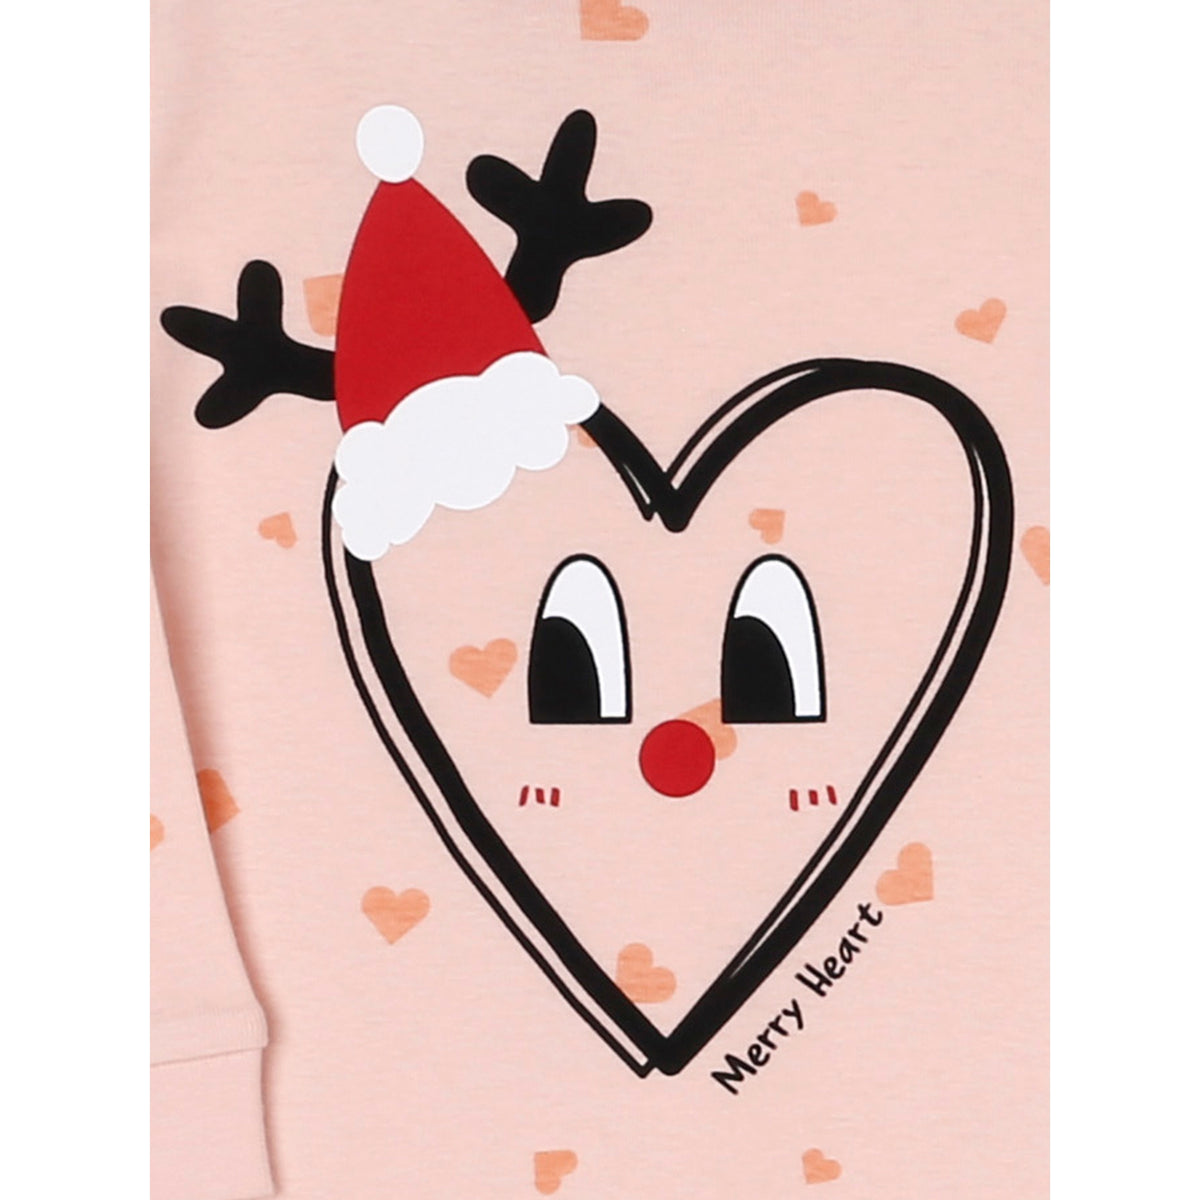 Maykids | Holiday Heart Organic Pajama Set